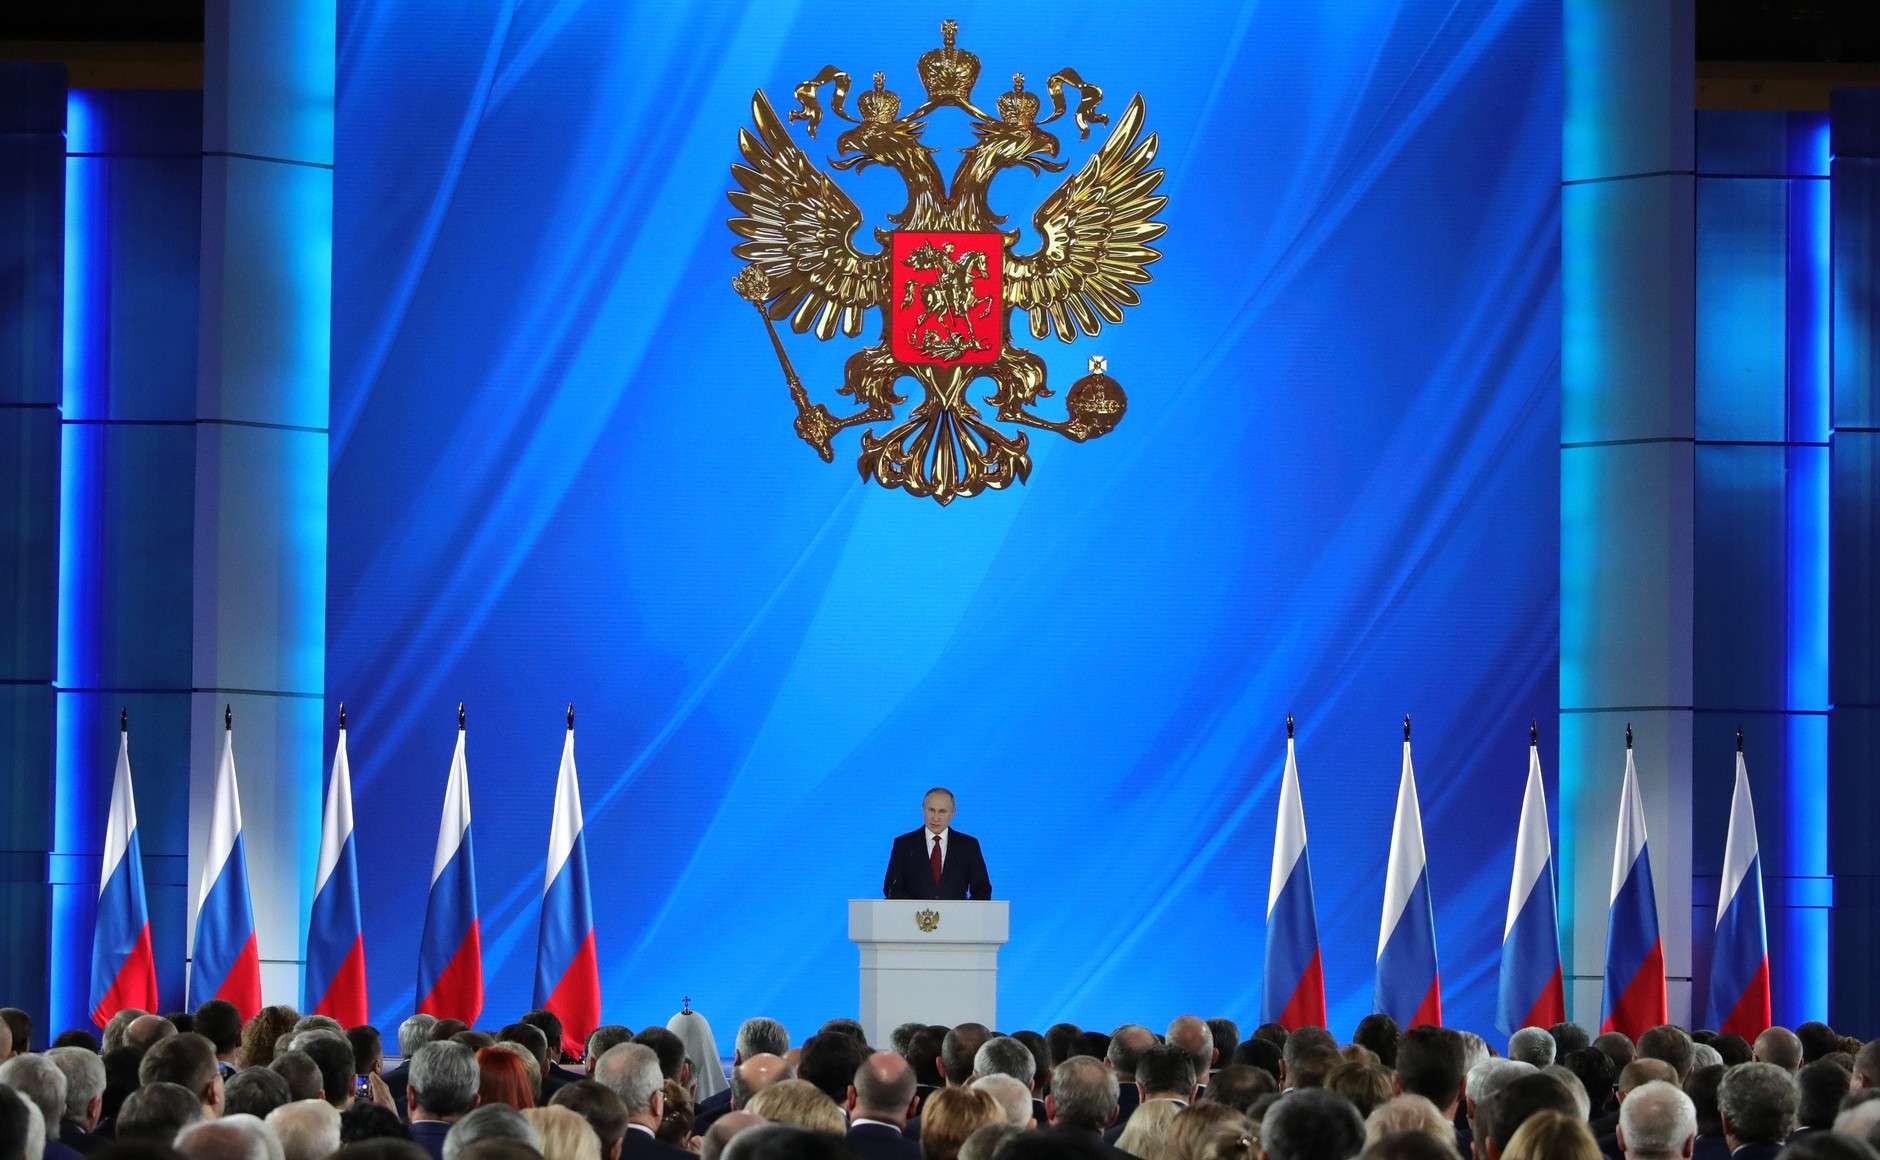 Η Μόσχα περιμένει την επίσημη ανακοίνωση  για να συγχαρεί τον νεοεκλεγέντα Αμερικανό πρόεδρο